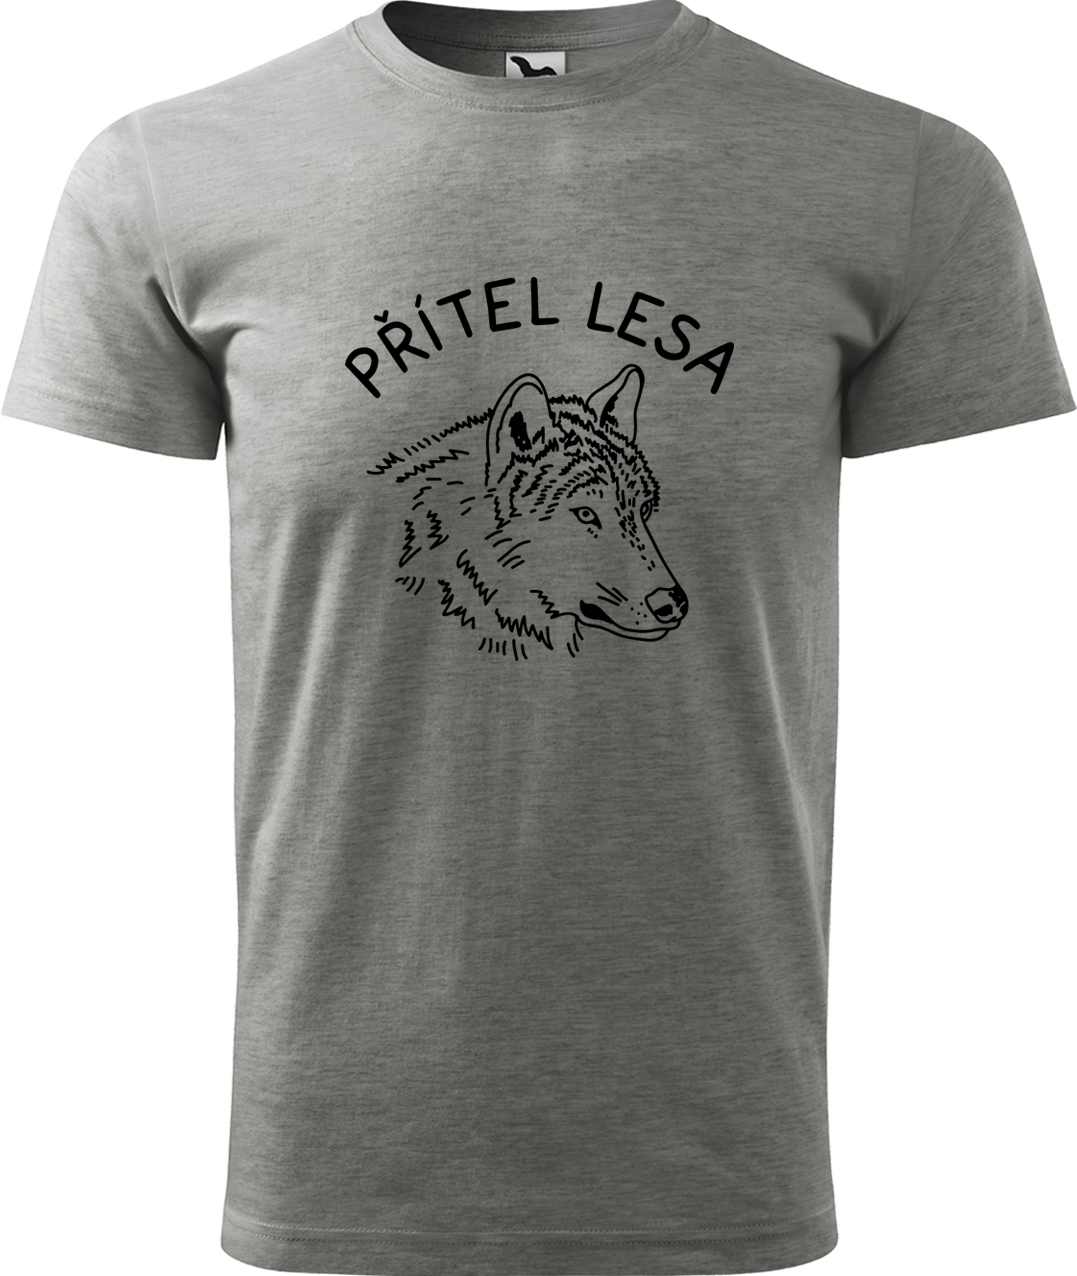 Pánské tričko s vlkem - Přítel lesa Velikost: L, Barva: Tmavě šedý melír (12), Střih: pánský